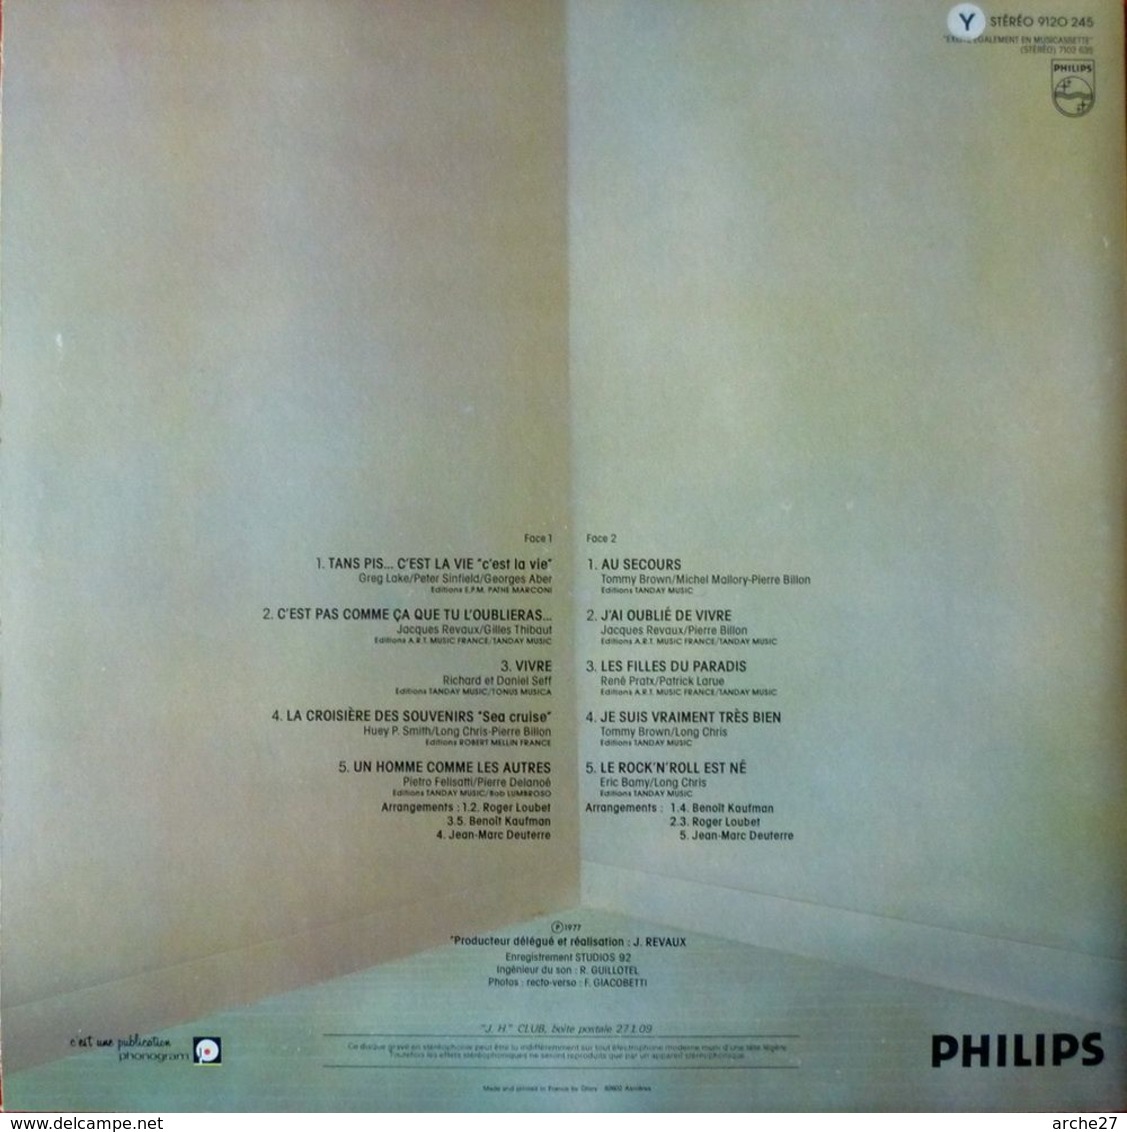 JOHNNY HALLYDAY - LP - 33T - Disque Vinyle - C'est La Vie - 9120 245 - Rock